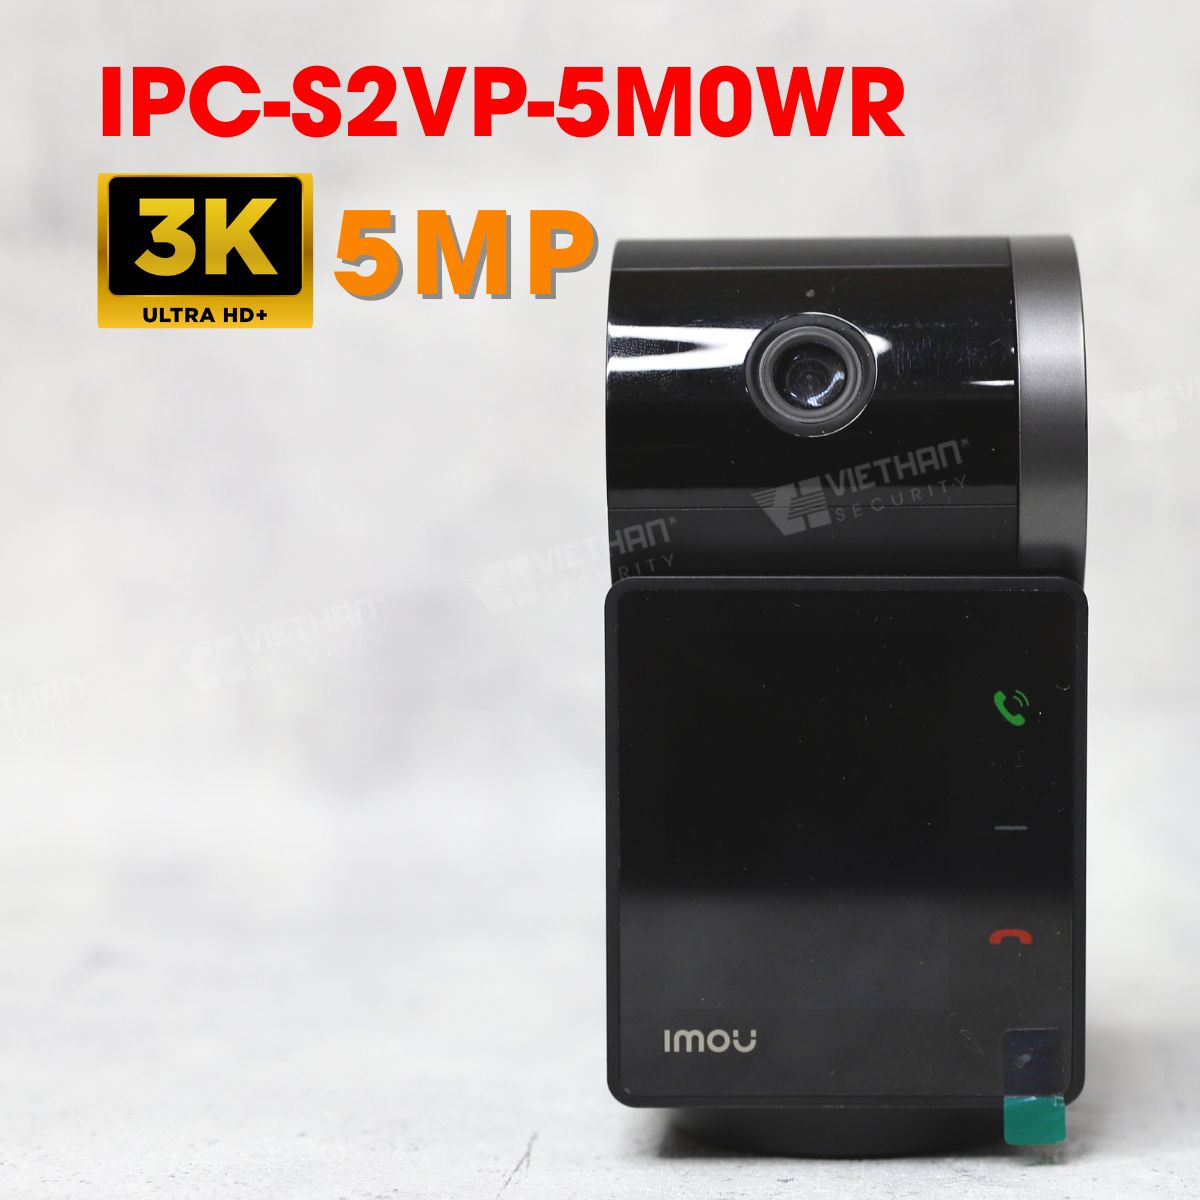 Camera Rex VT có màn hình gọi điện IMOU IPC-S2VP-5M0WR 3K 5MP, xoay 360 độ, phát hiện tiếng ồn, đàm thoại 2 chiều, hồng ngoại 20m